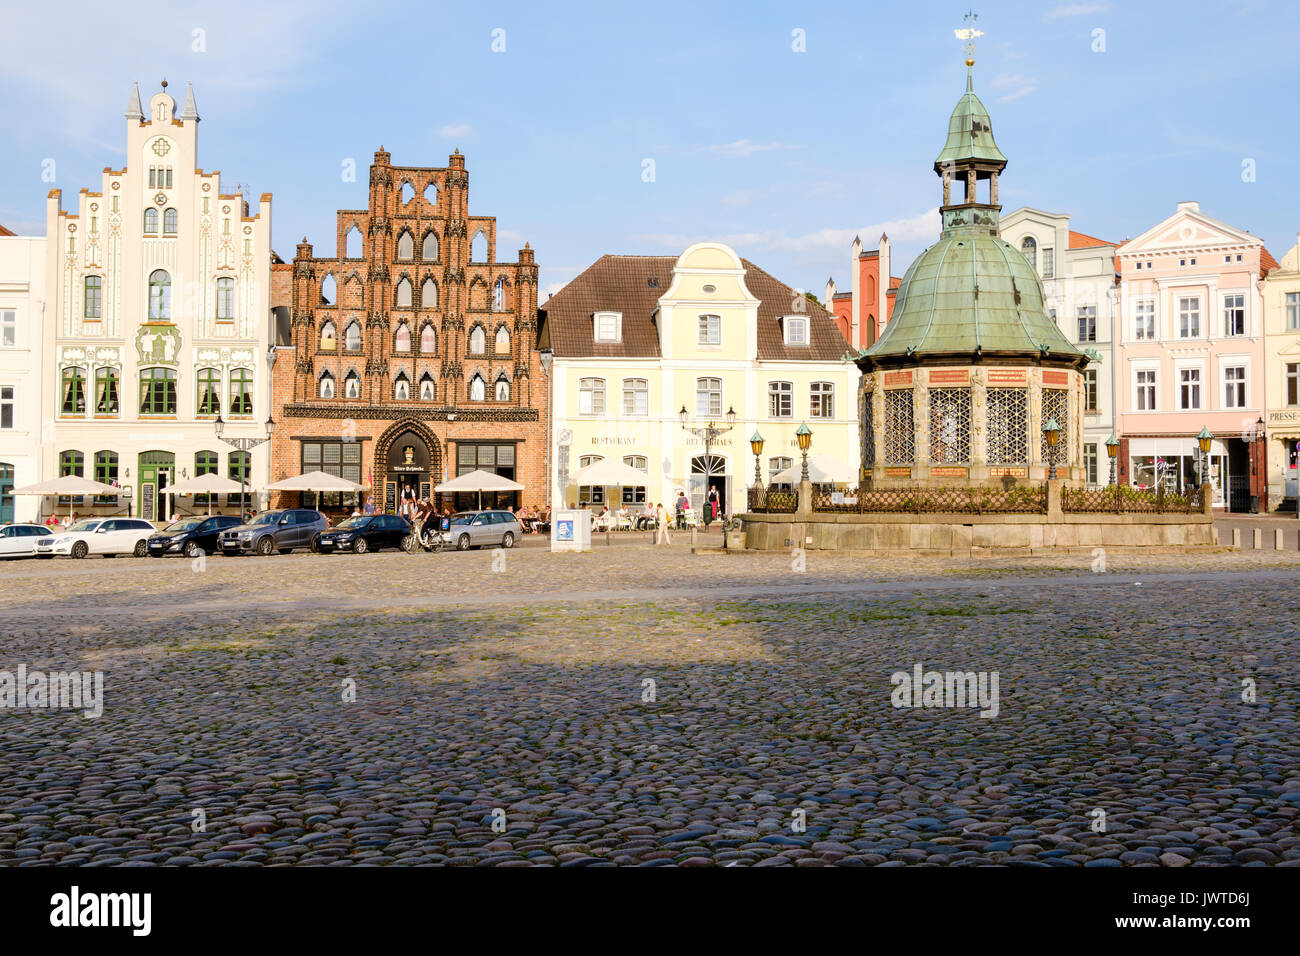 Place du marché, avec l'Am Markt Alter Schwede Wasserkunst fontaine et Restaurant et hôtel, Wismar, Mecklenburg-Vorpommern, Allemagne Banque D'Images